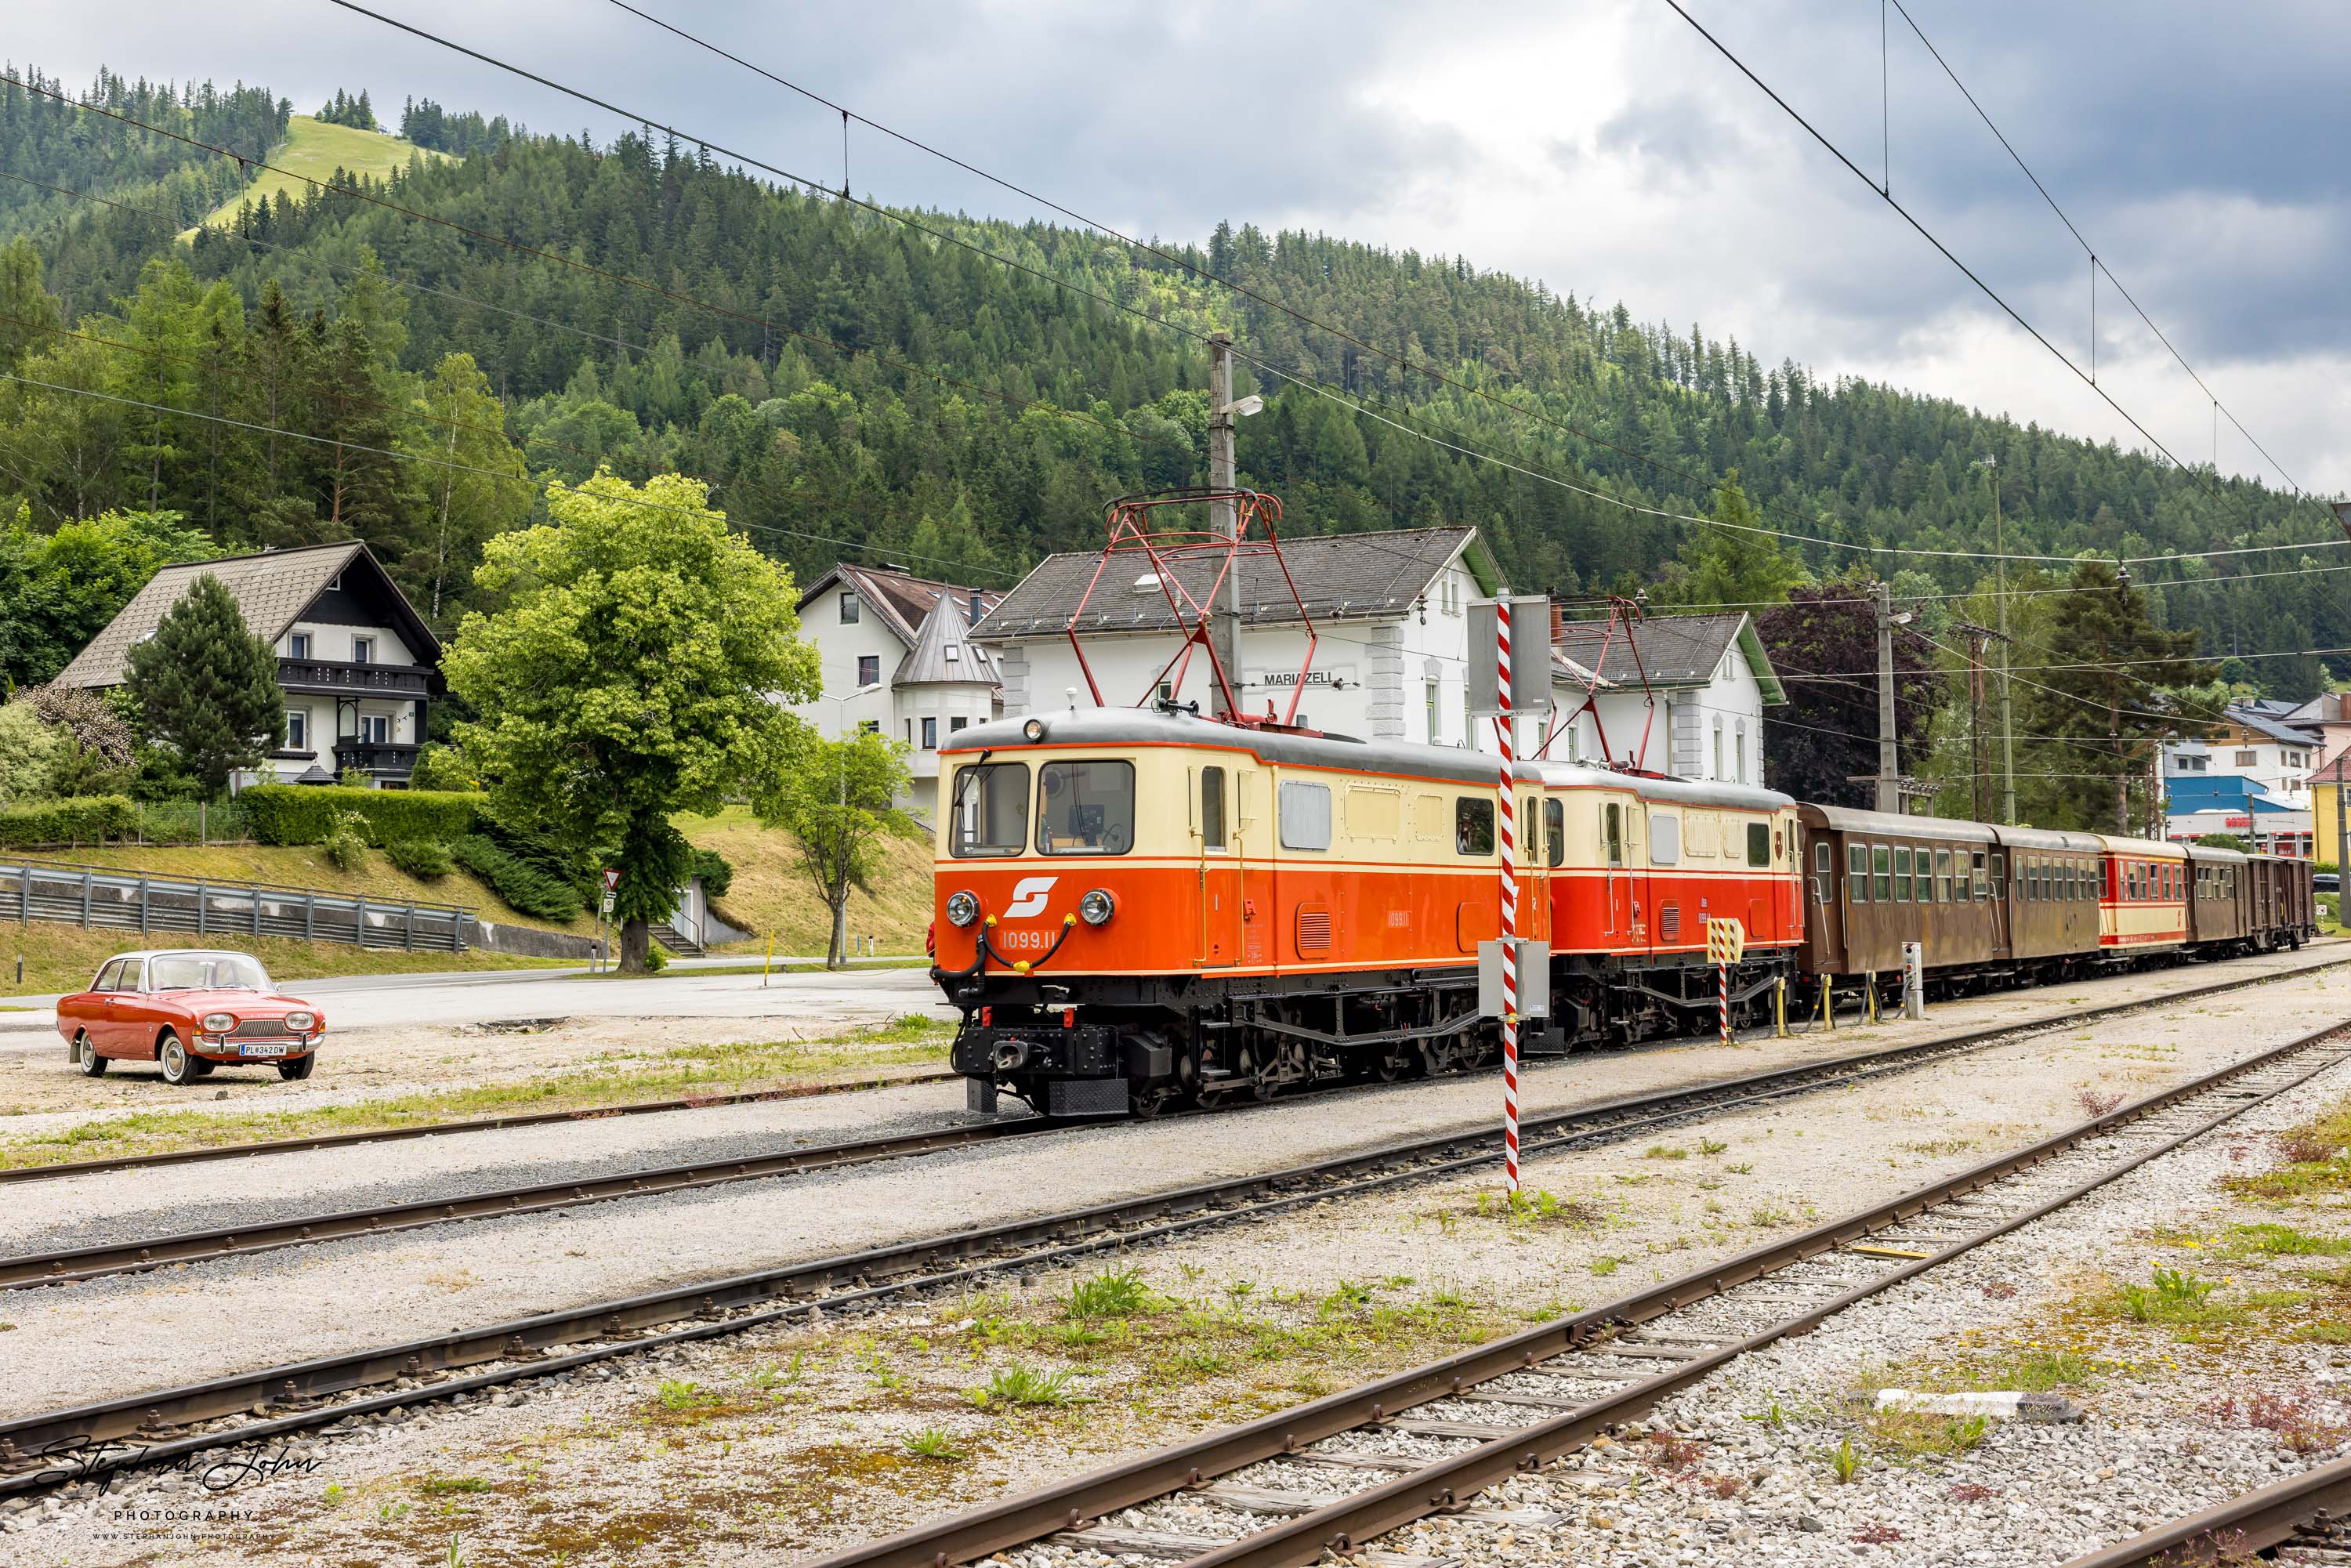 Zug 80964 mit Lok 1099.11 und 1099.14 nach Gösing steht abfahrtbereit in Mariazell